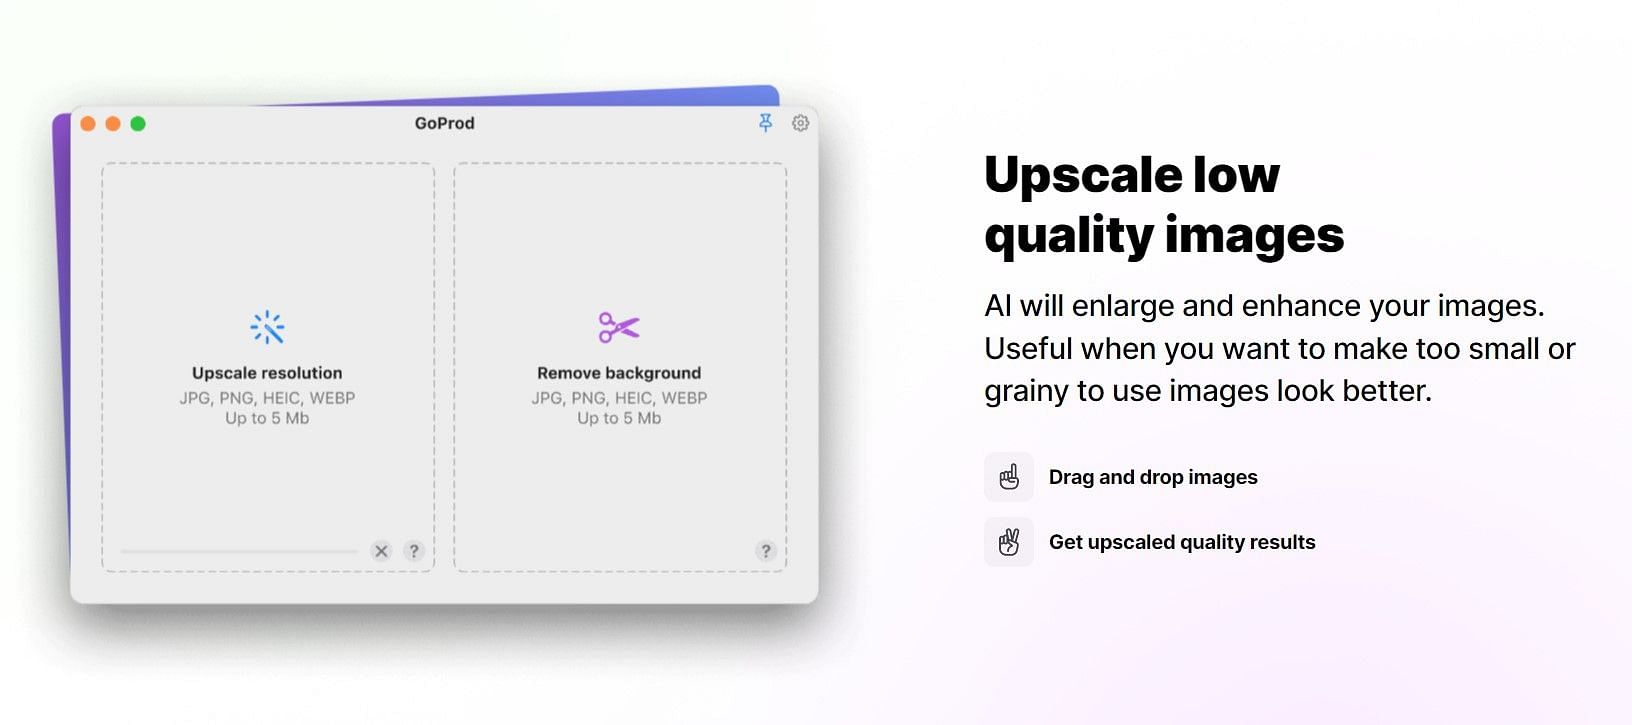 GoProd cho Mac - Loại bỏ nền và nâng cấp hàng loạt hình ảnh: Không cần phải lo lắng về nền ảnh không đẹp hoặc mờ mờ nữa với GoProd cho Mac! Sử dụng công cụ này để dễ dàng loại bỏ phông nền và cải thiện hàng loạt hình ảnh chỉ trong vài cú nhấp chuột.